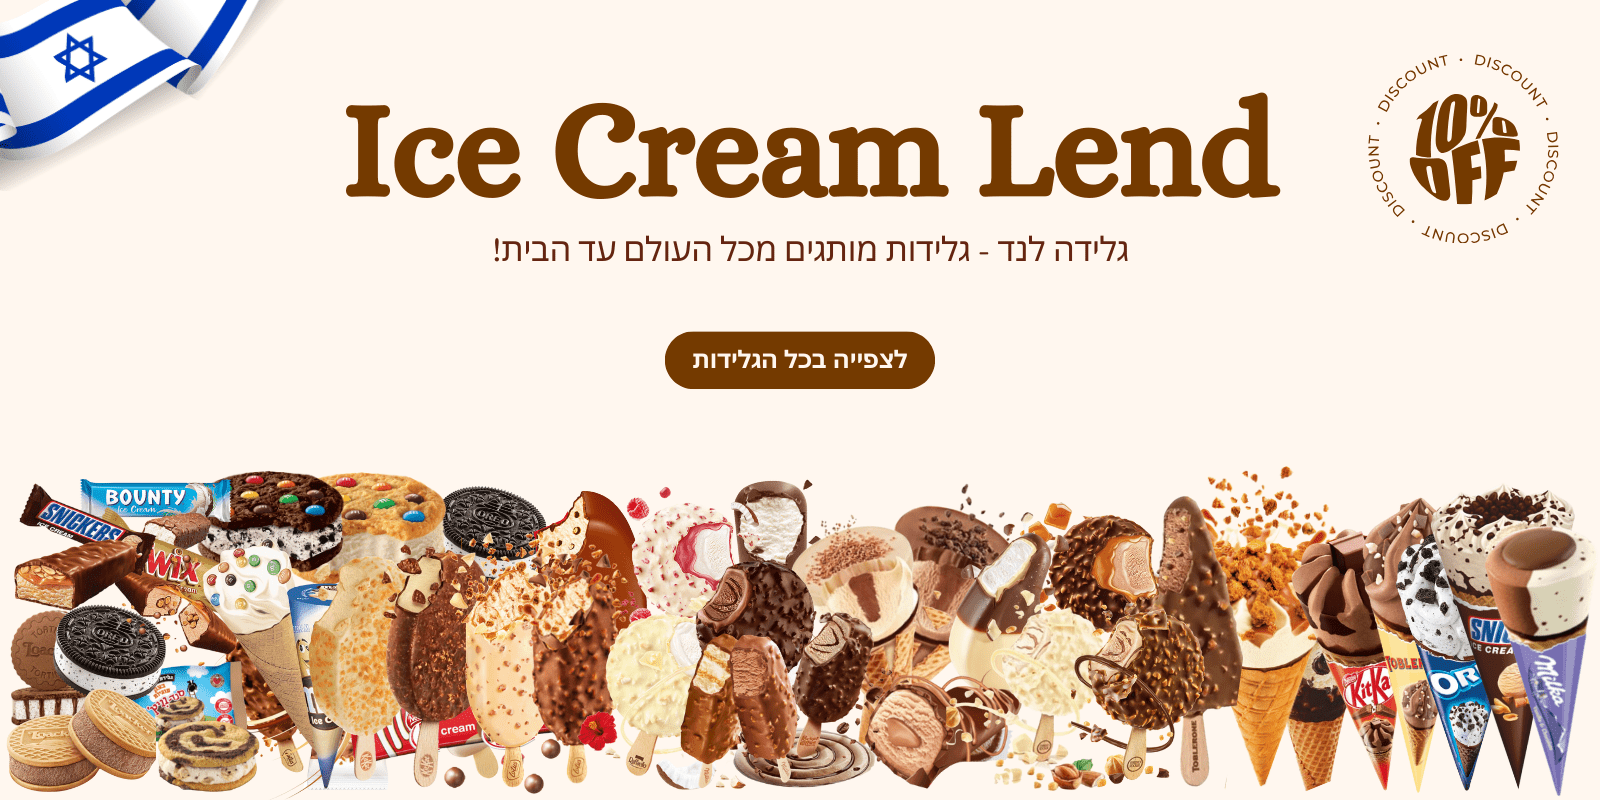 גלידה לנד - גלידות מותגים מכל העולם עד הבית